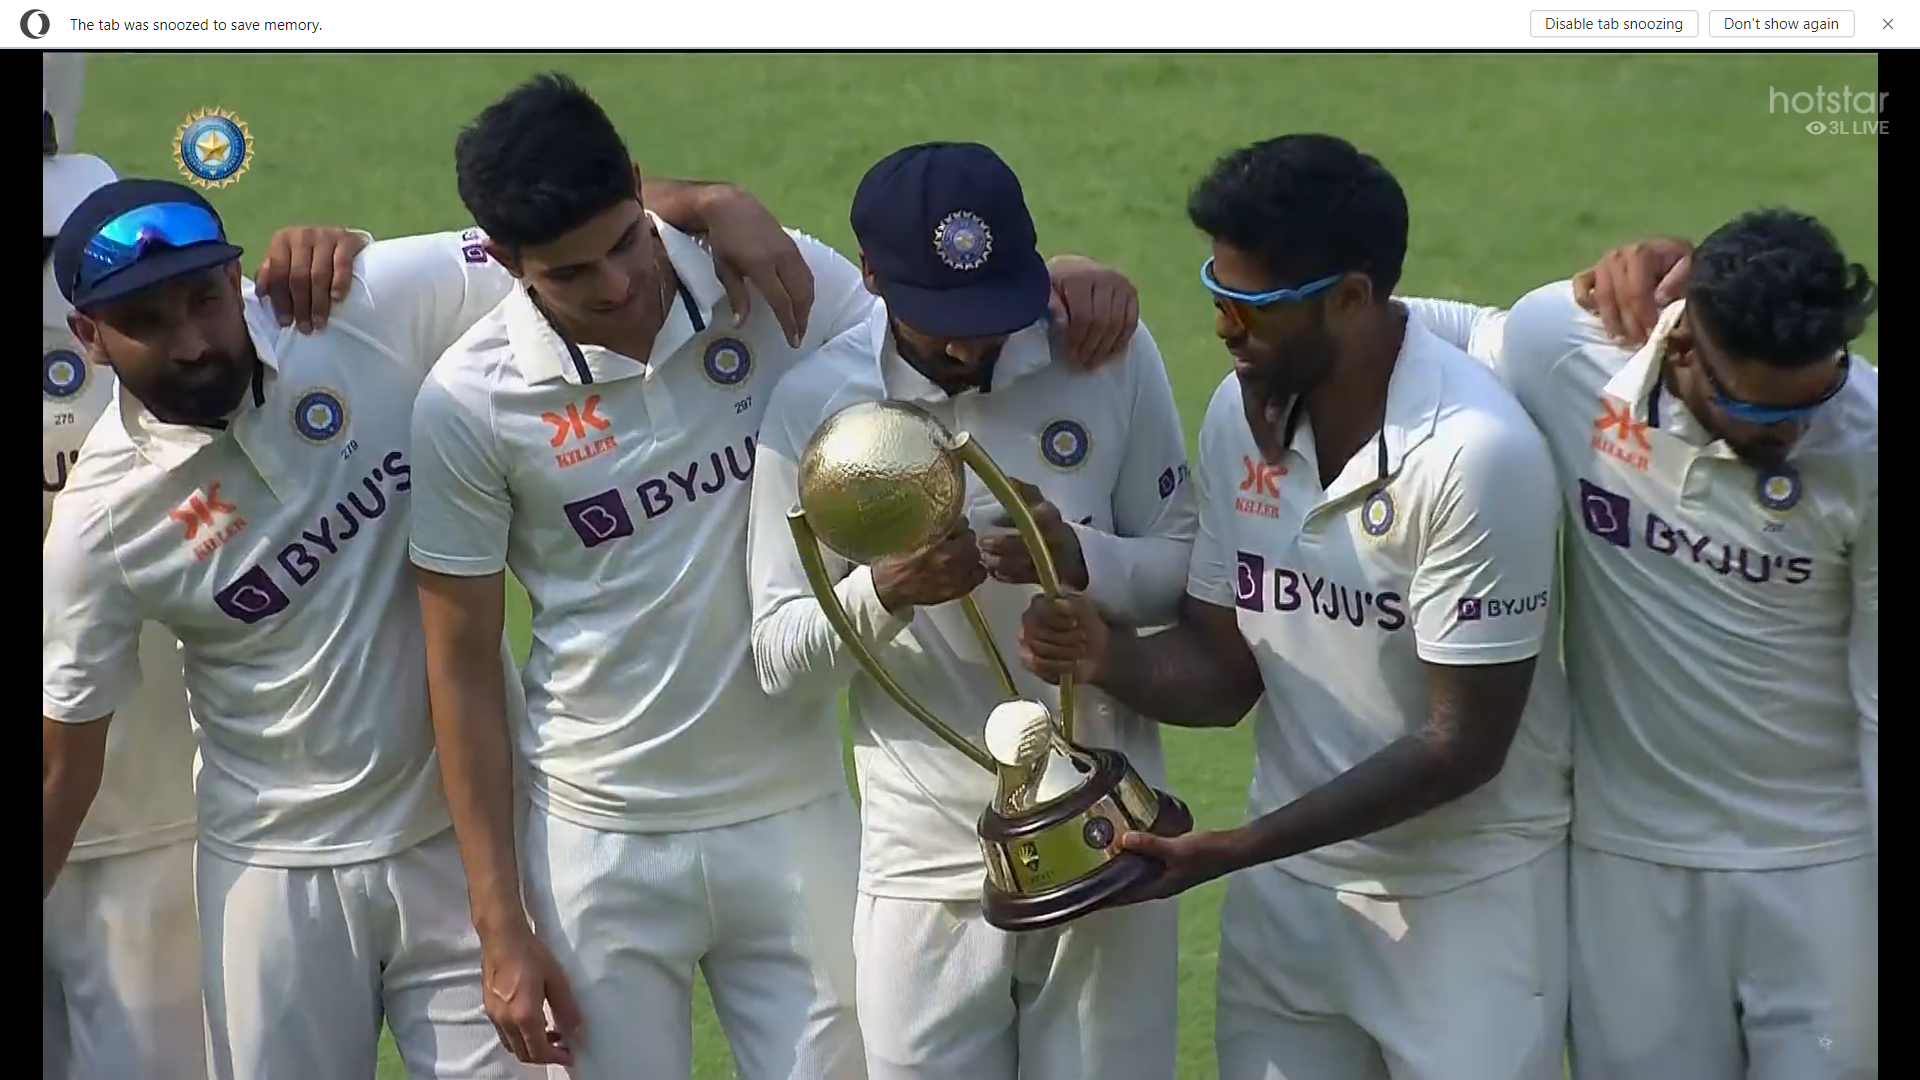 Ind Vs Aus: टेस्ट के बाद अब वनडे में भी कंगारुओं की हार तय, चार साल में एक भी सीरीज नहीं हारा है भारत, जानिए कब खेला जाएगा श्रंखला का पहले मैच